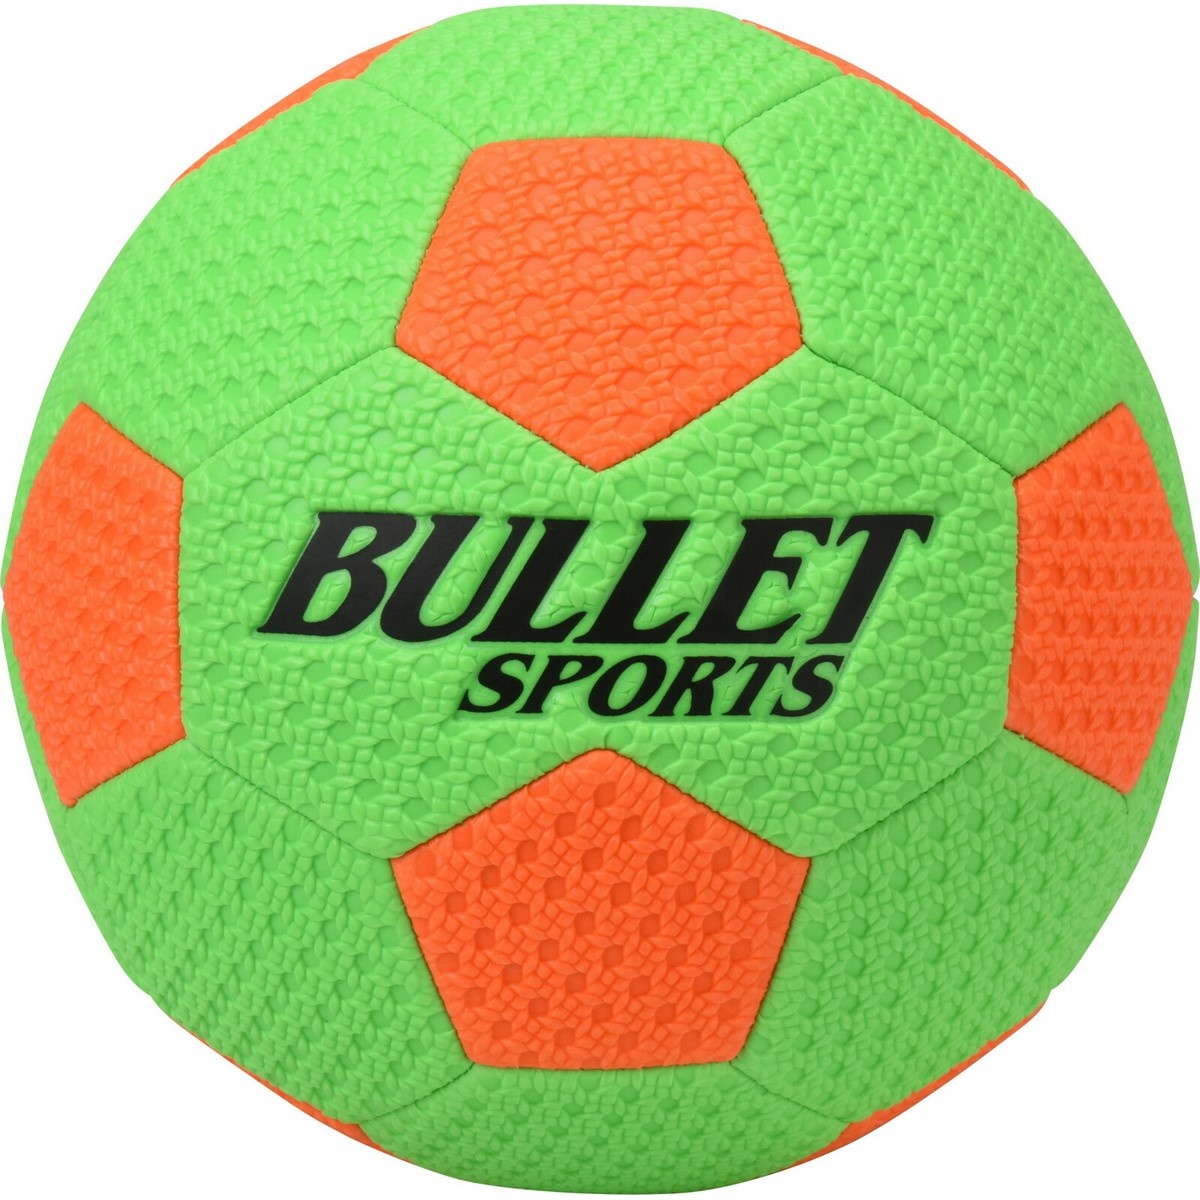 Futbalová lopta veľ. 5, pr. 22 cm, zelená